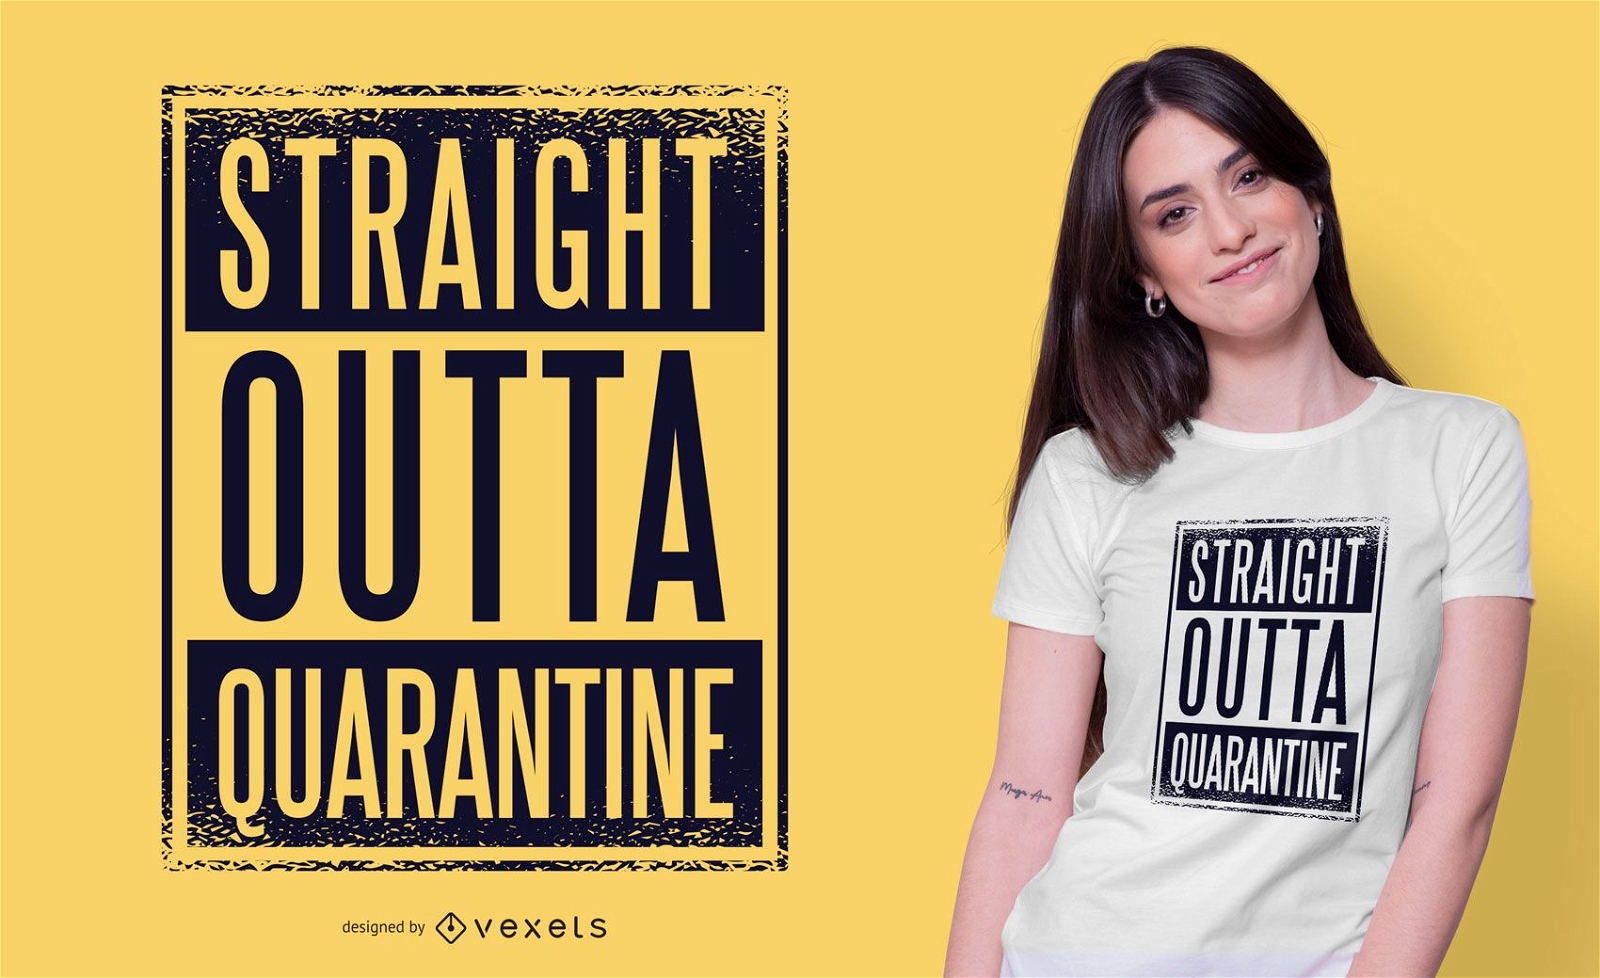 Straight outta quarantine t-shirt design